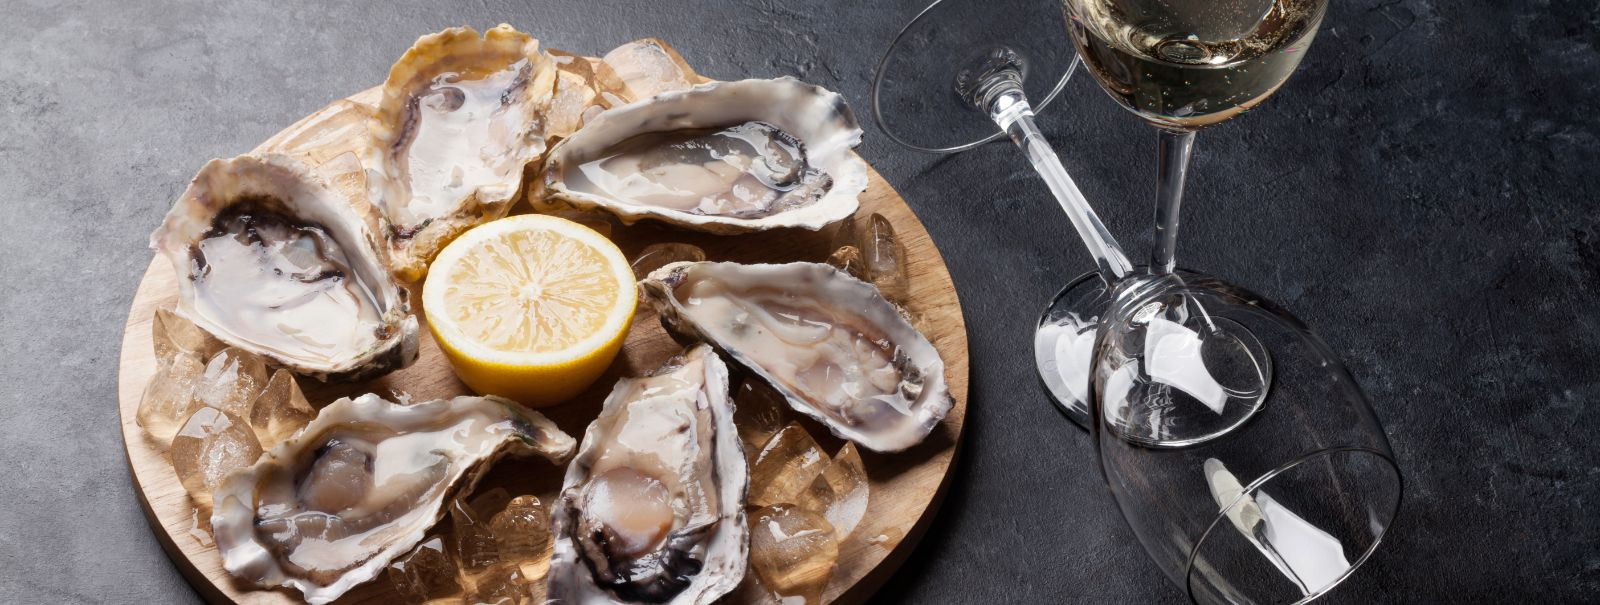 Austrite ideaalse veini paaritamine on kulinaarne kunstivorm, mis tõstab esile nende mereandide loomulikke maitseid. Õige vein võib tõsta austrite kogemust, luu